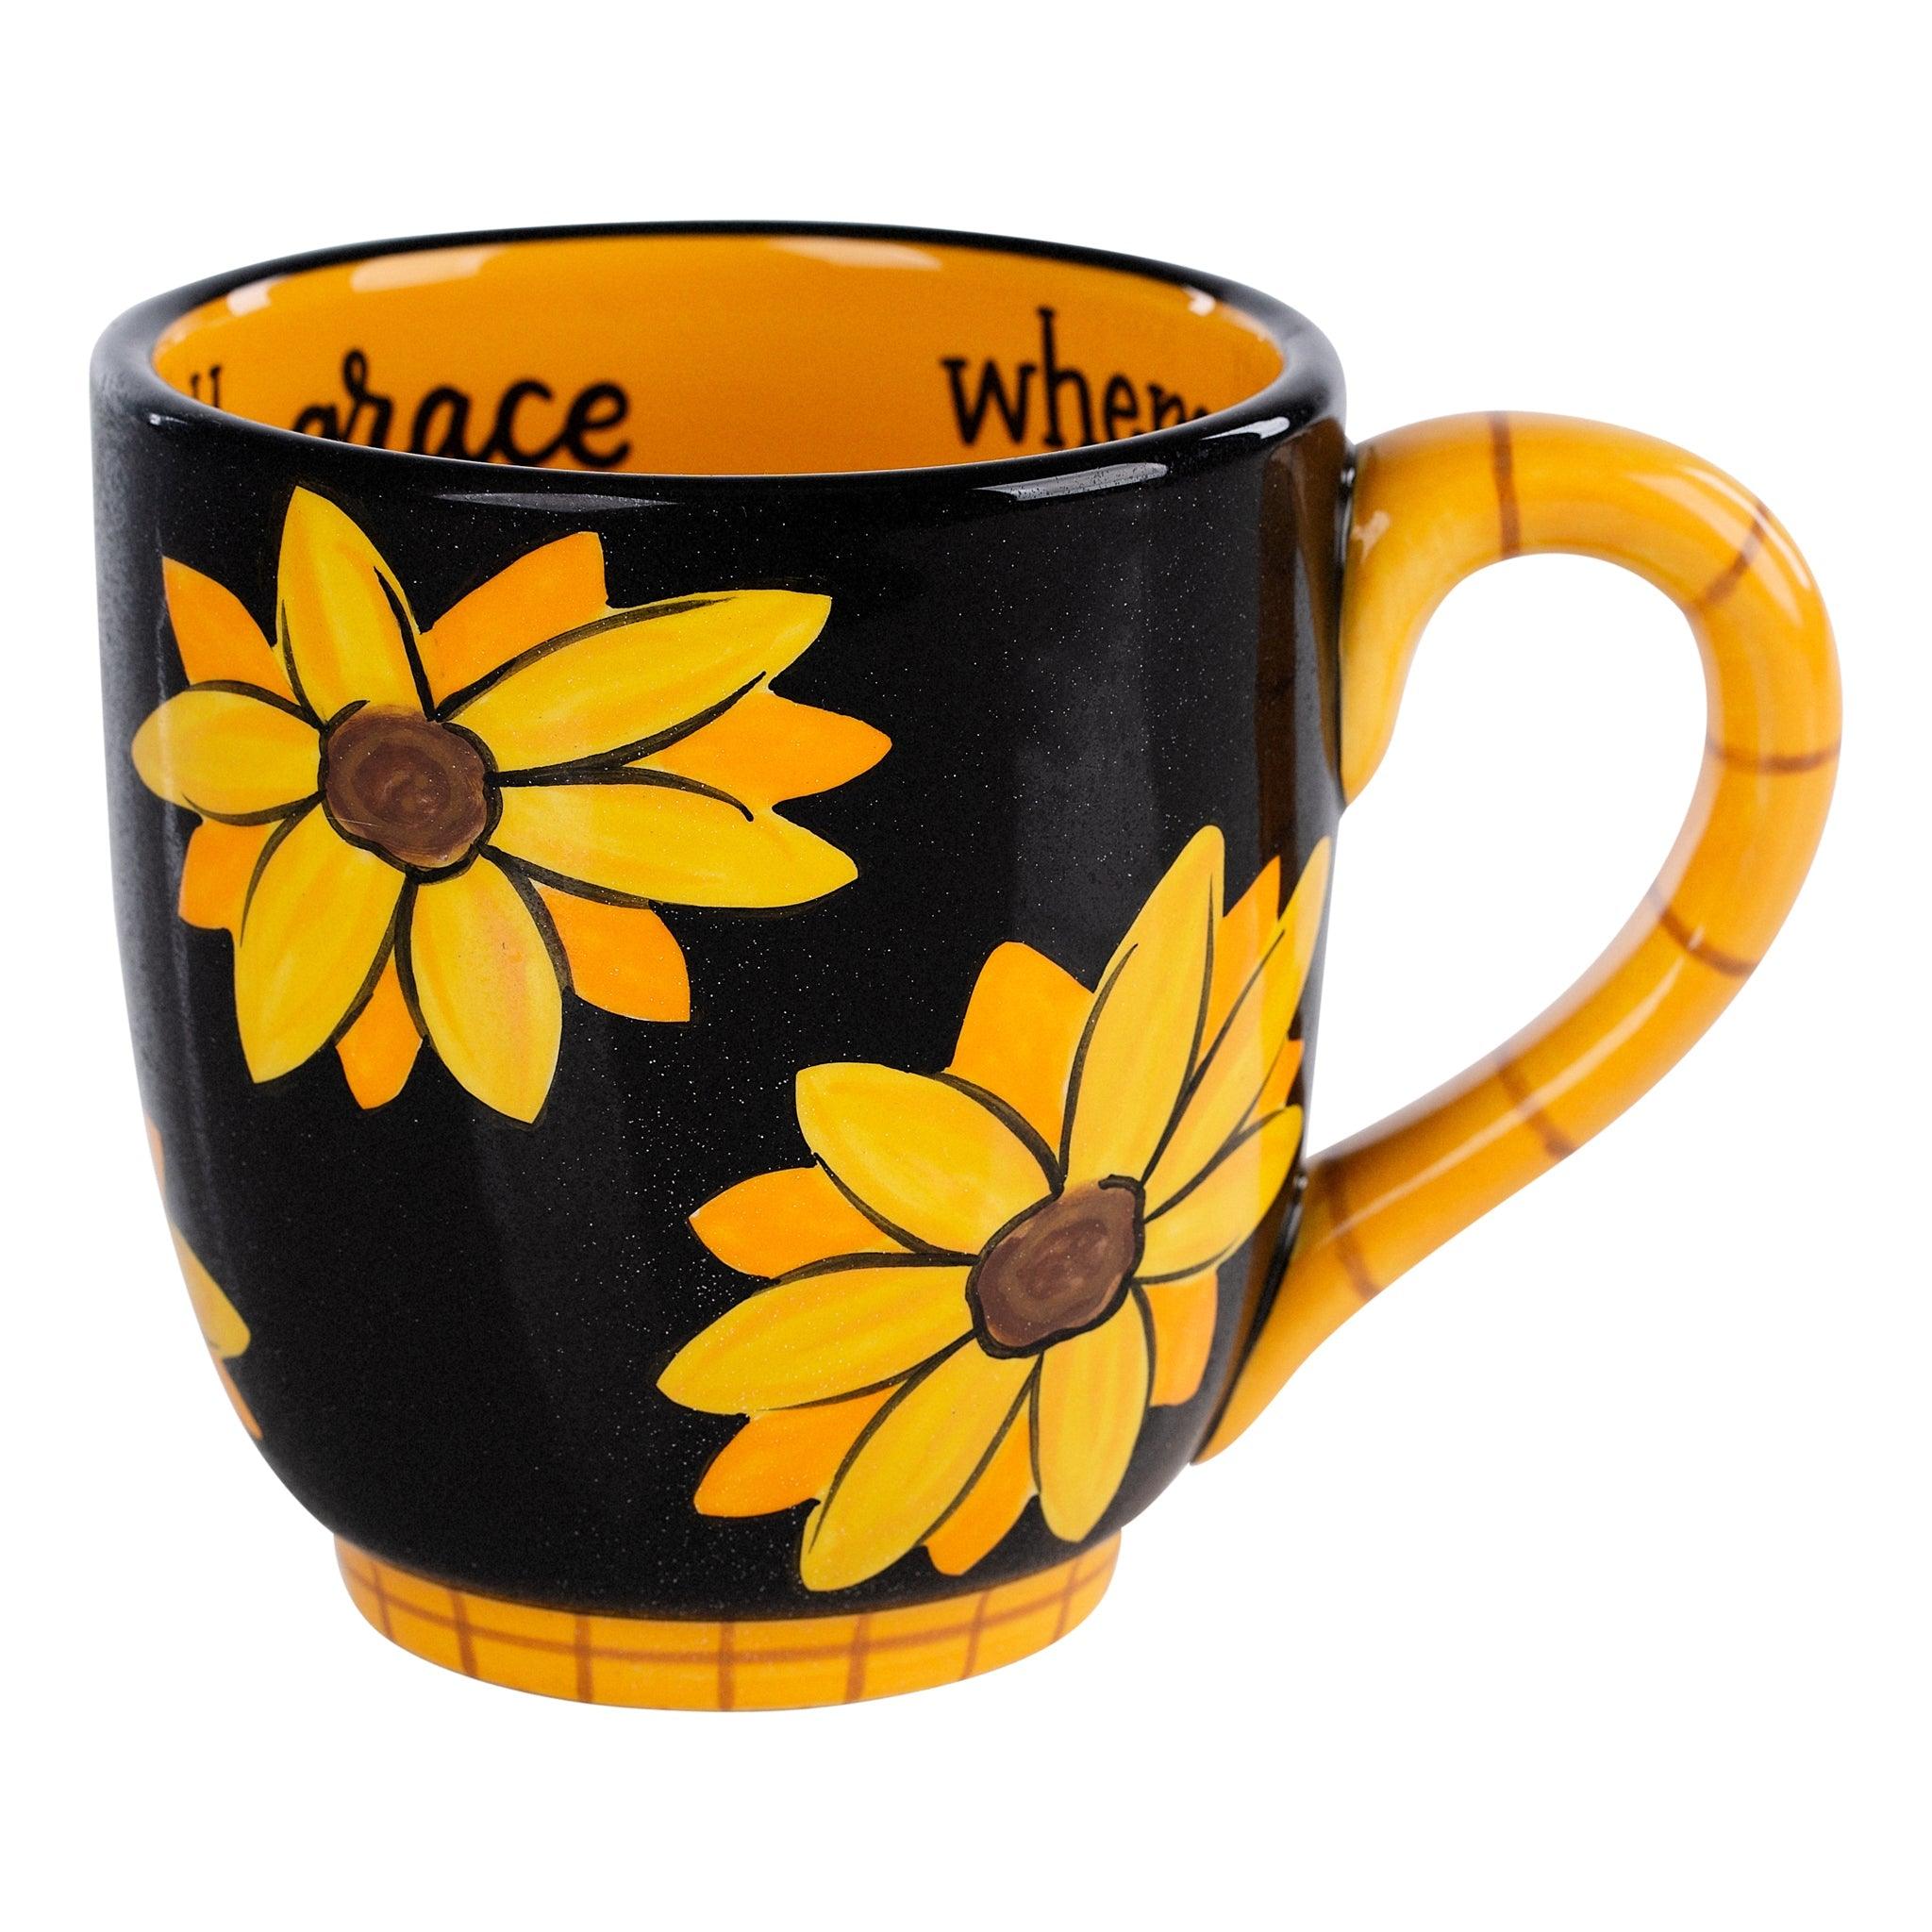 Hope Blooms Ceramic Mug